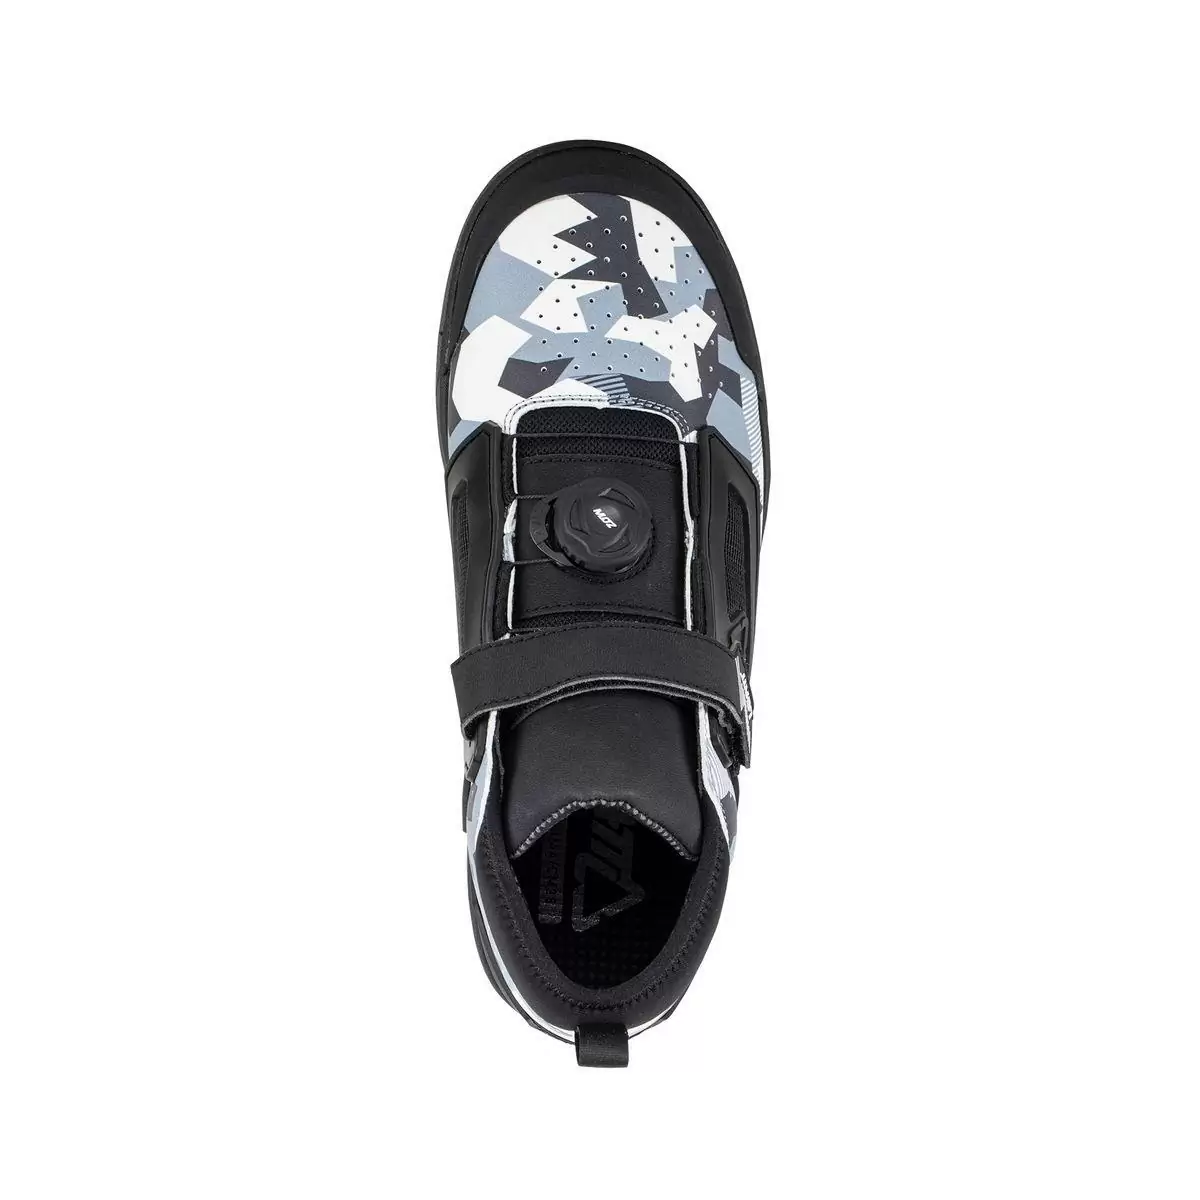 Chaussures VTT 3.0 Flat Pro Blanc/Noir Taille 45.5 #2